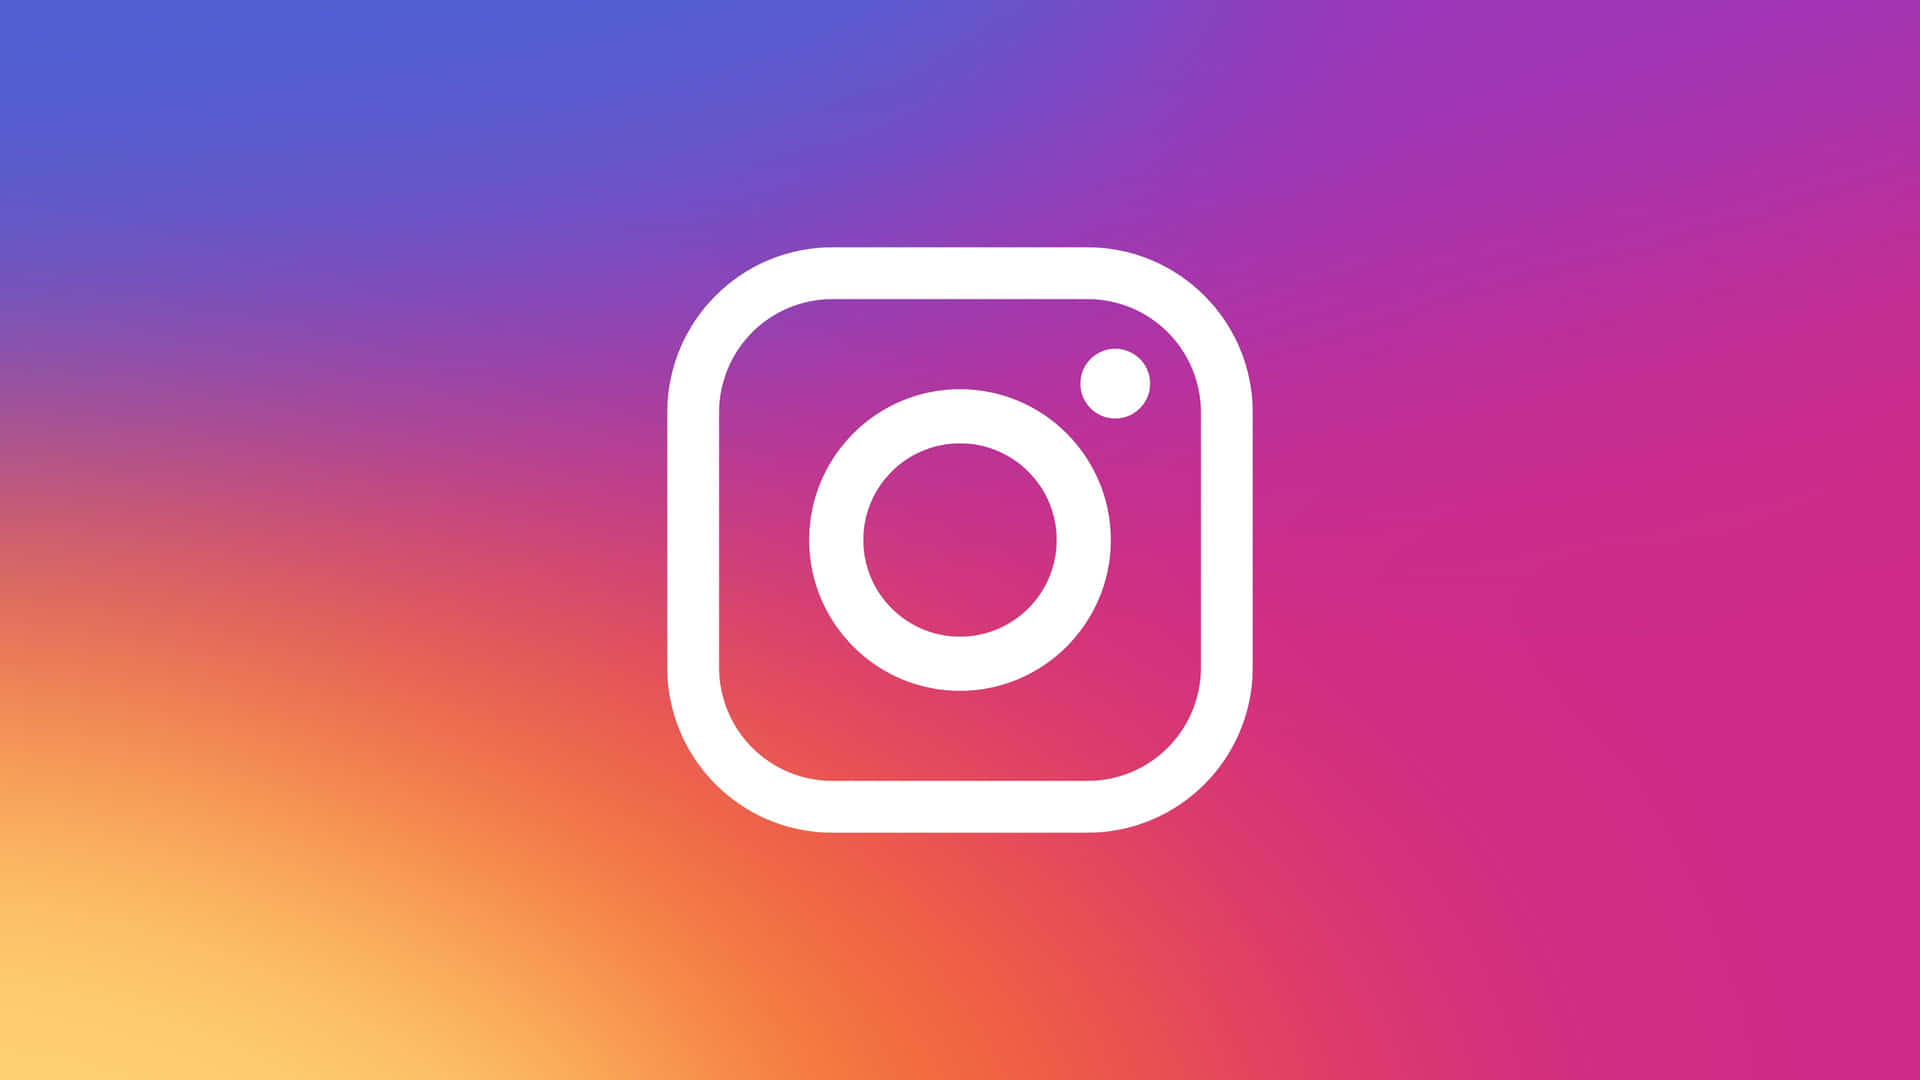 Aesthetic Instagram New Logo Background